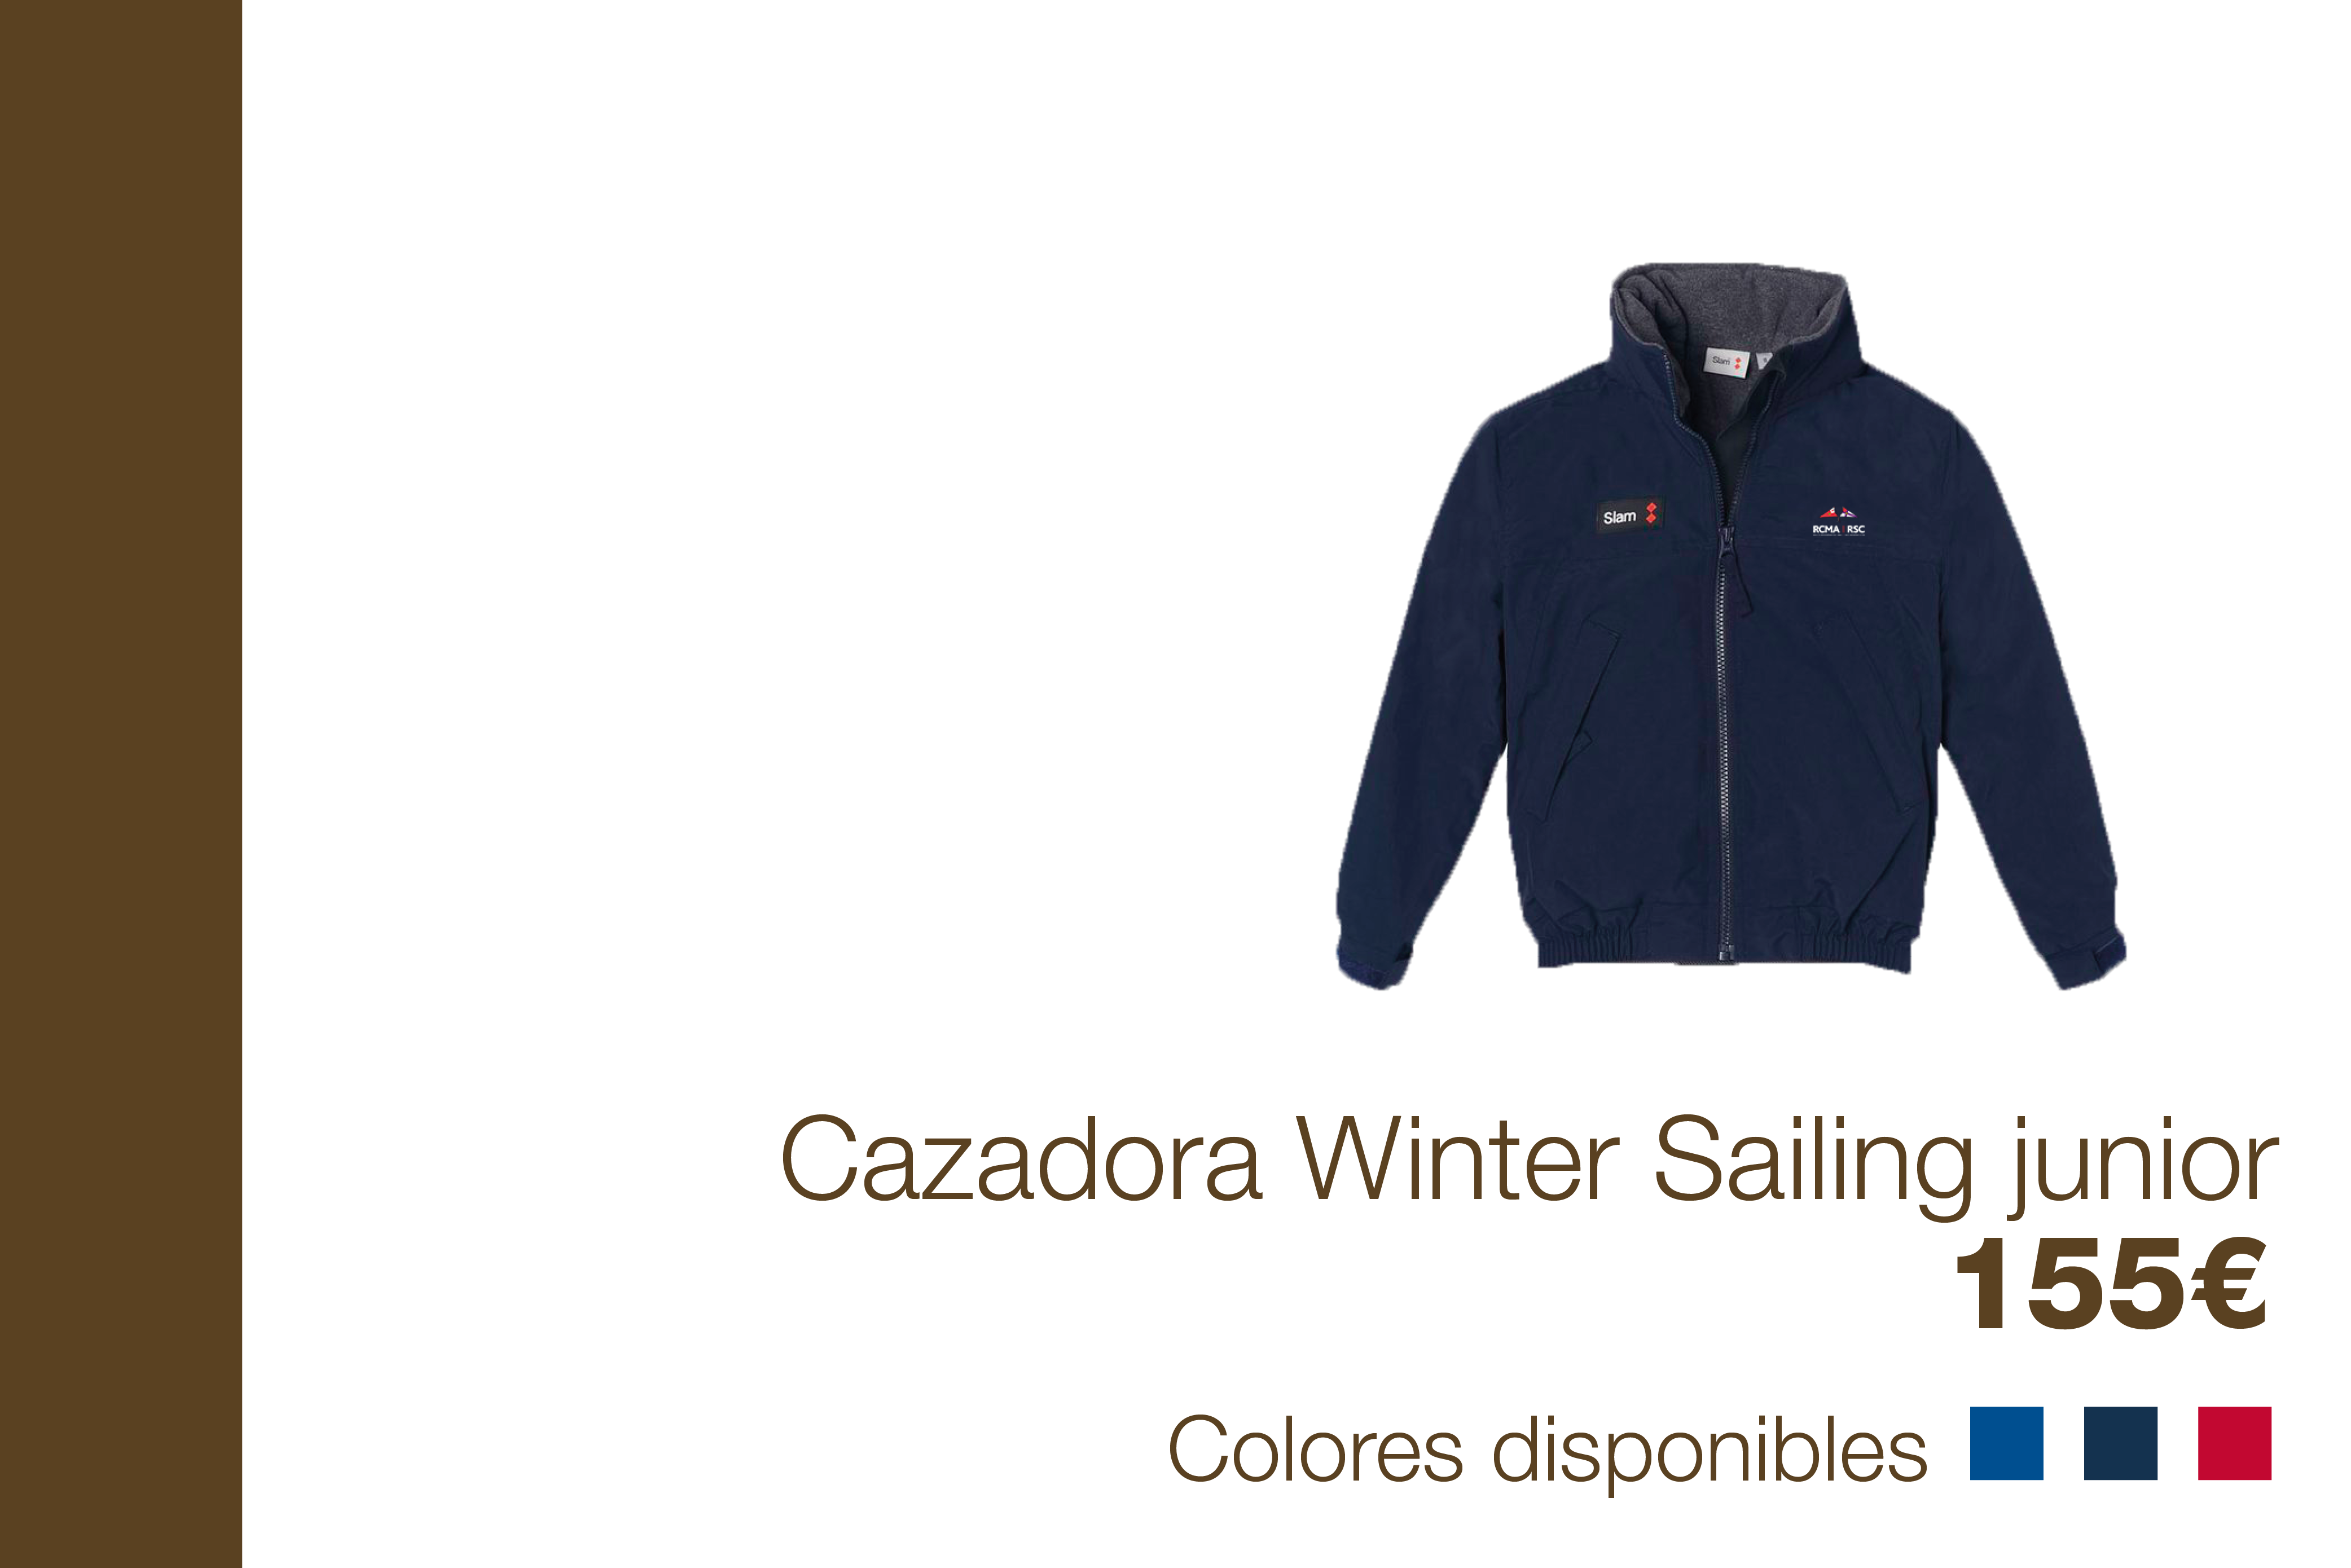 Cazadora Winter Sailing junior - 155